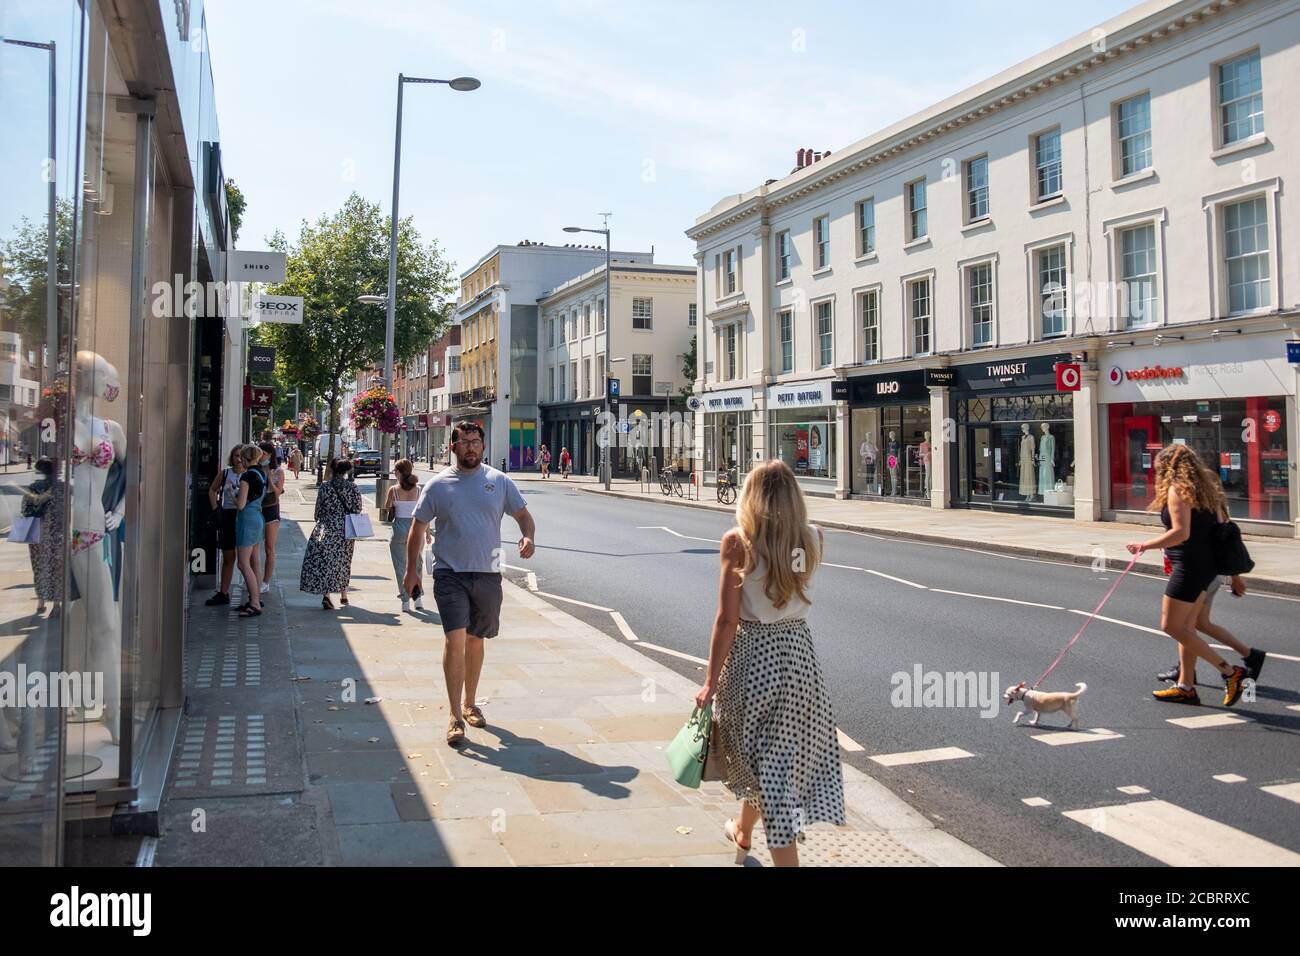 Londra - Agosto 2020: Shopping su Kings Road, un'area esclusiva di negozi di moda e ristoranti nell'area di Chelsea nel sud-ovest di Londra Foto Stock